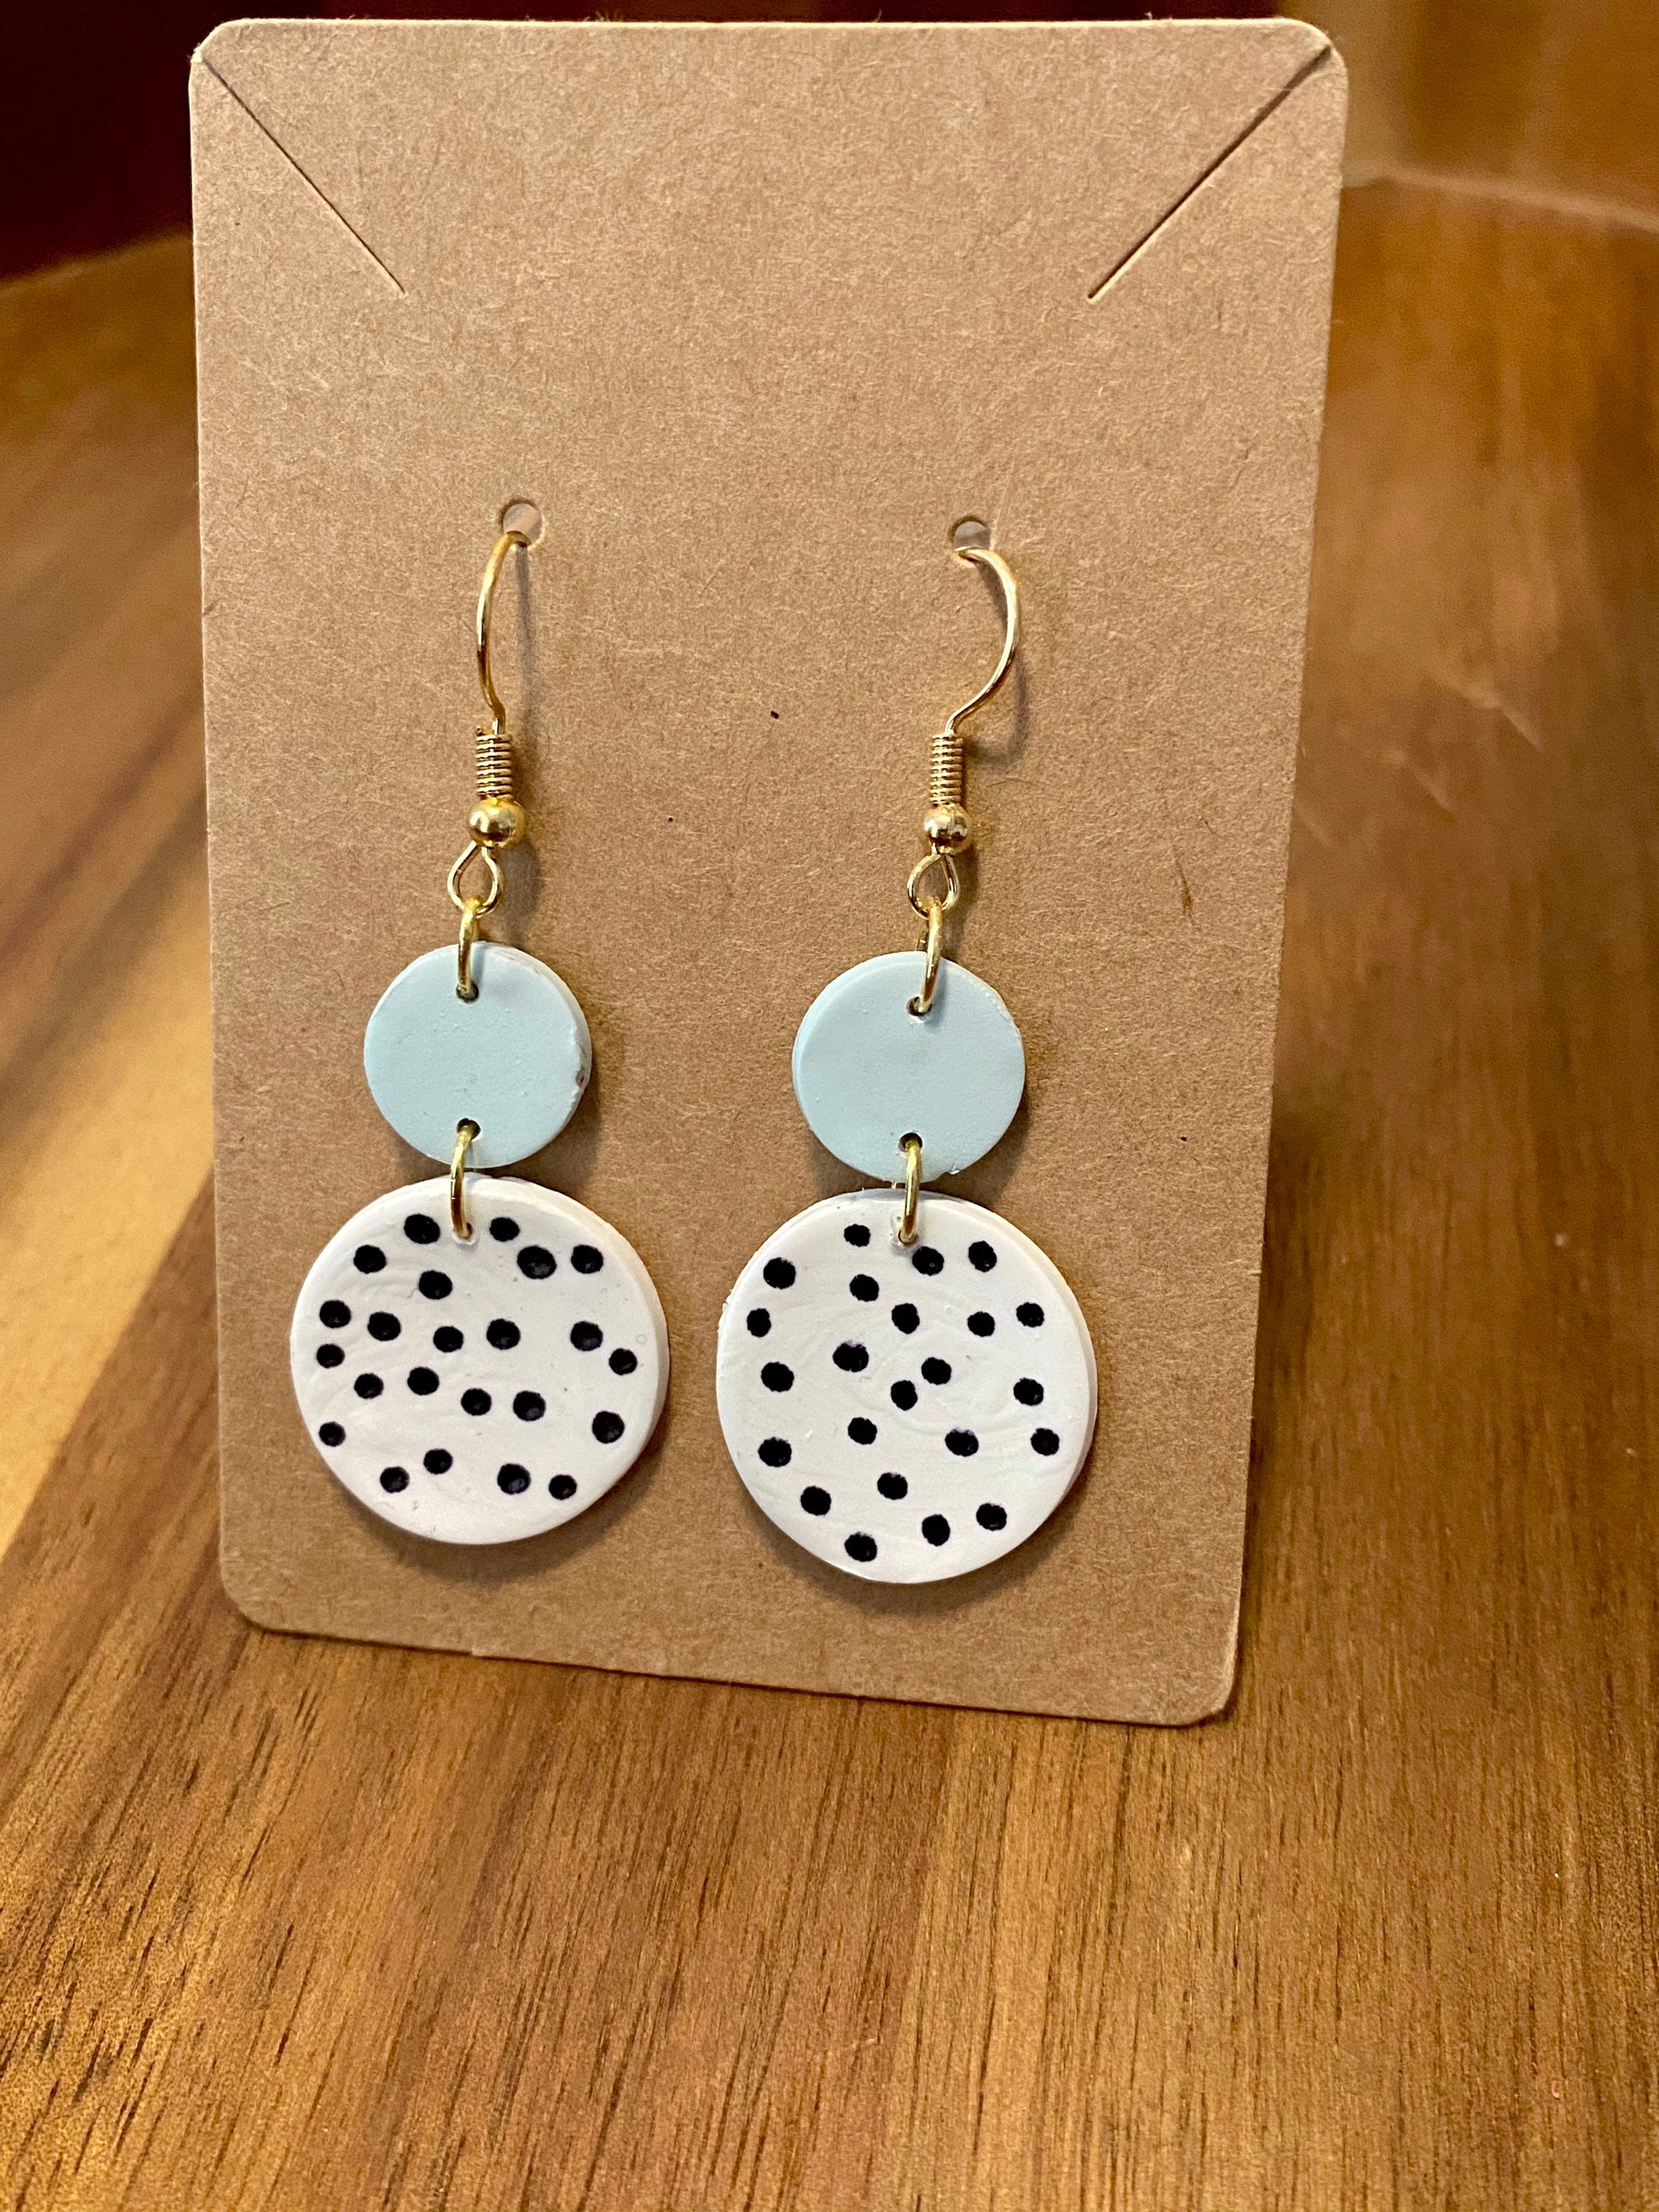 Handmade Clay Earrings teacher earrings handmade gift | Etsy